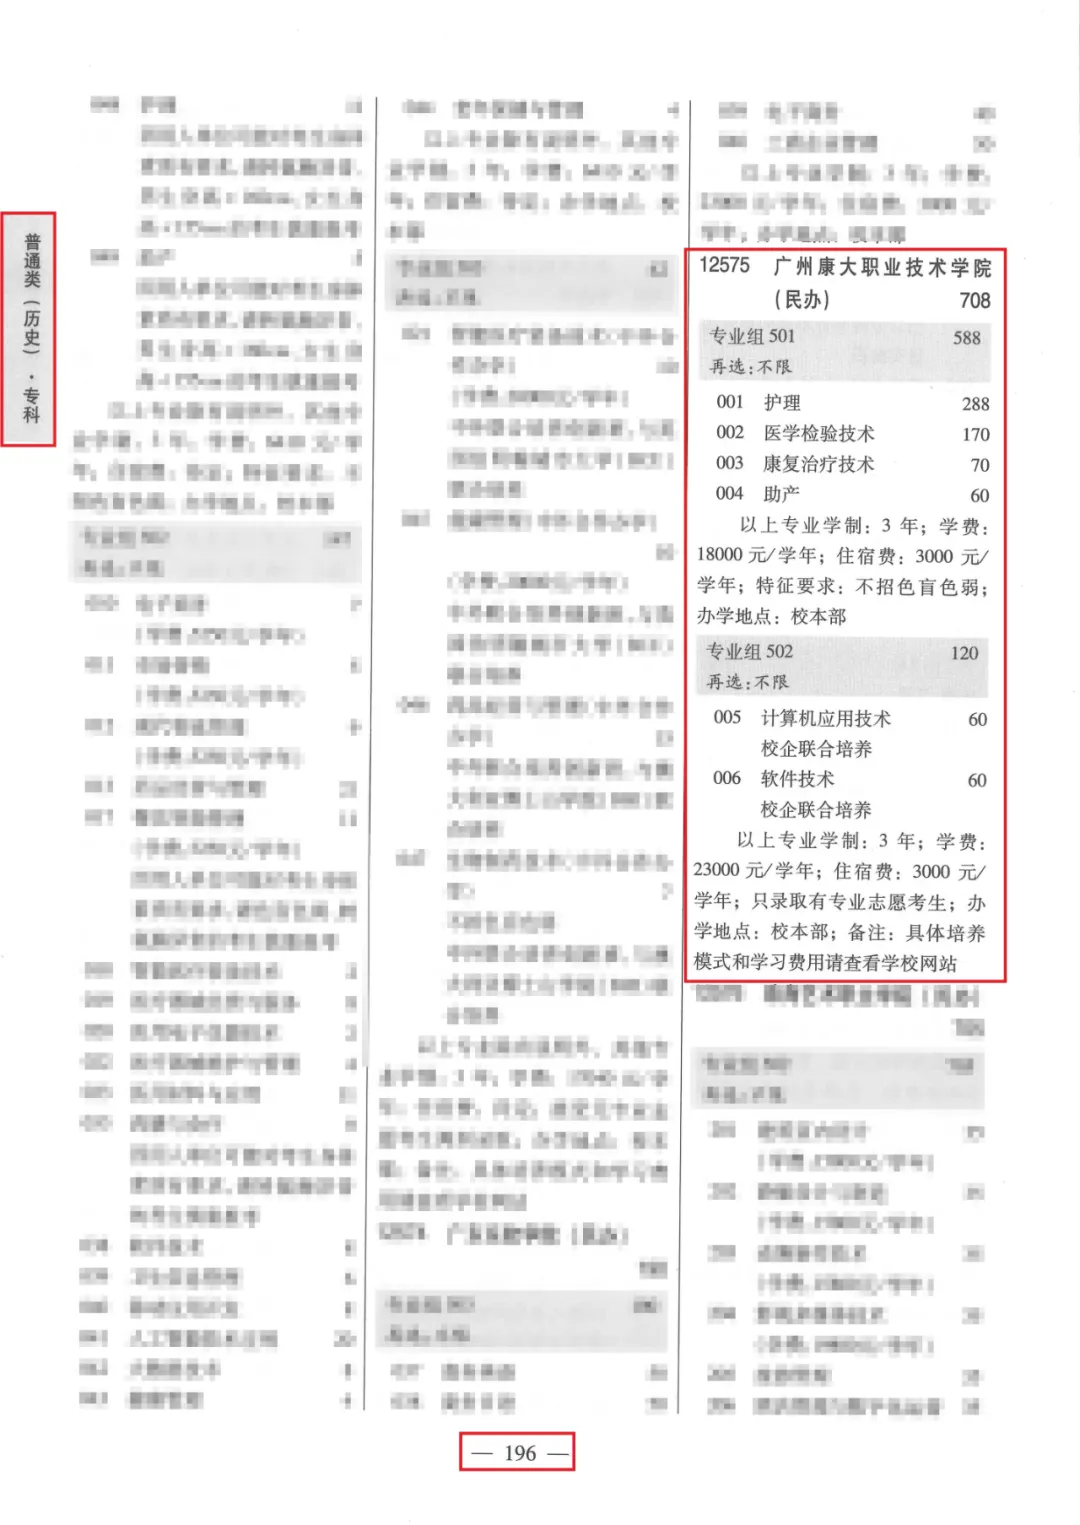 夏季高考丨廣州康大最全報考指南震撼來襲